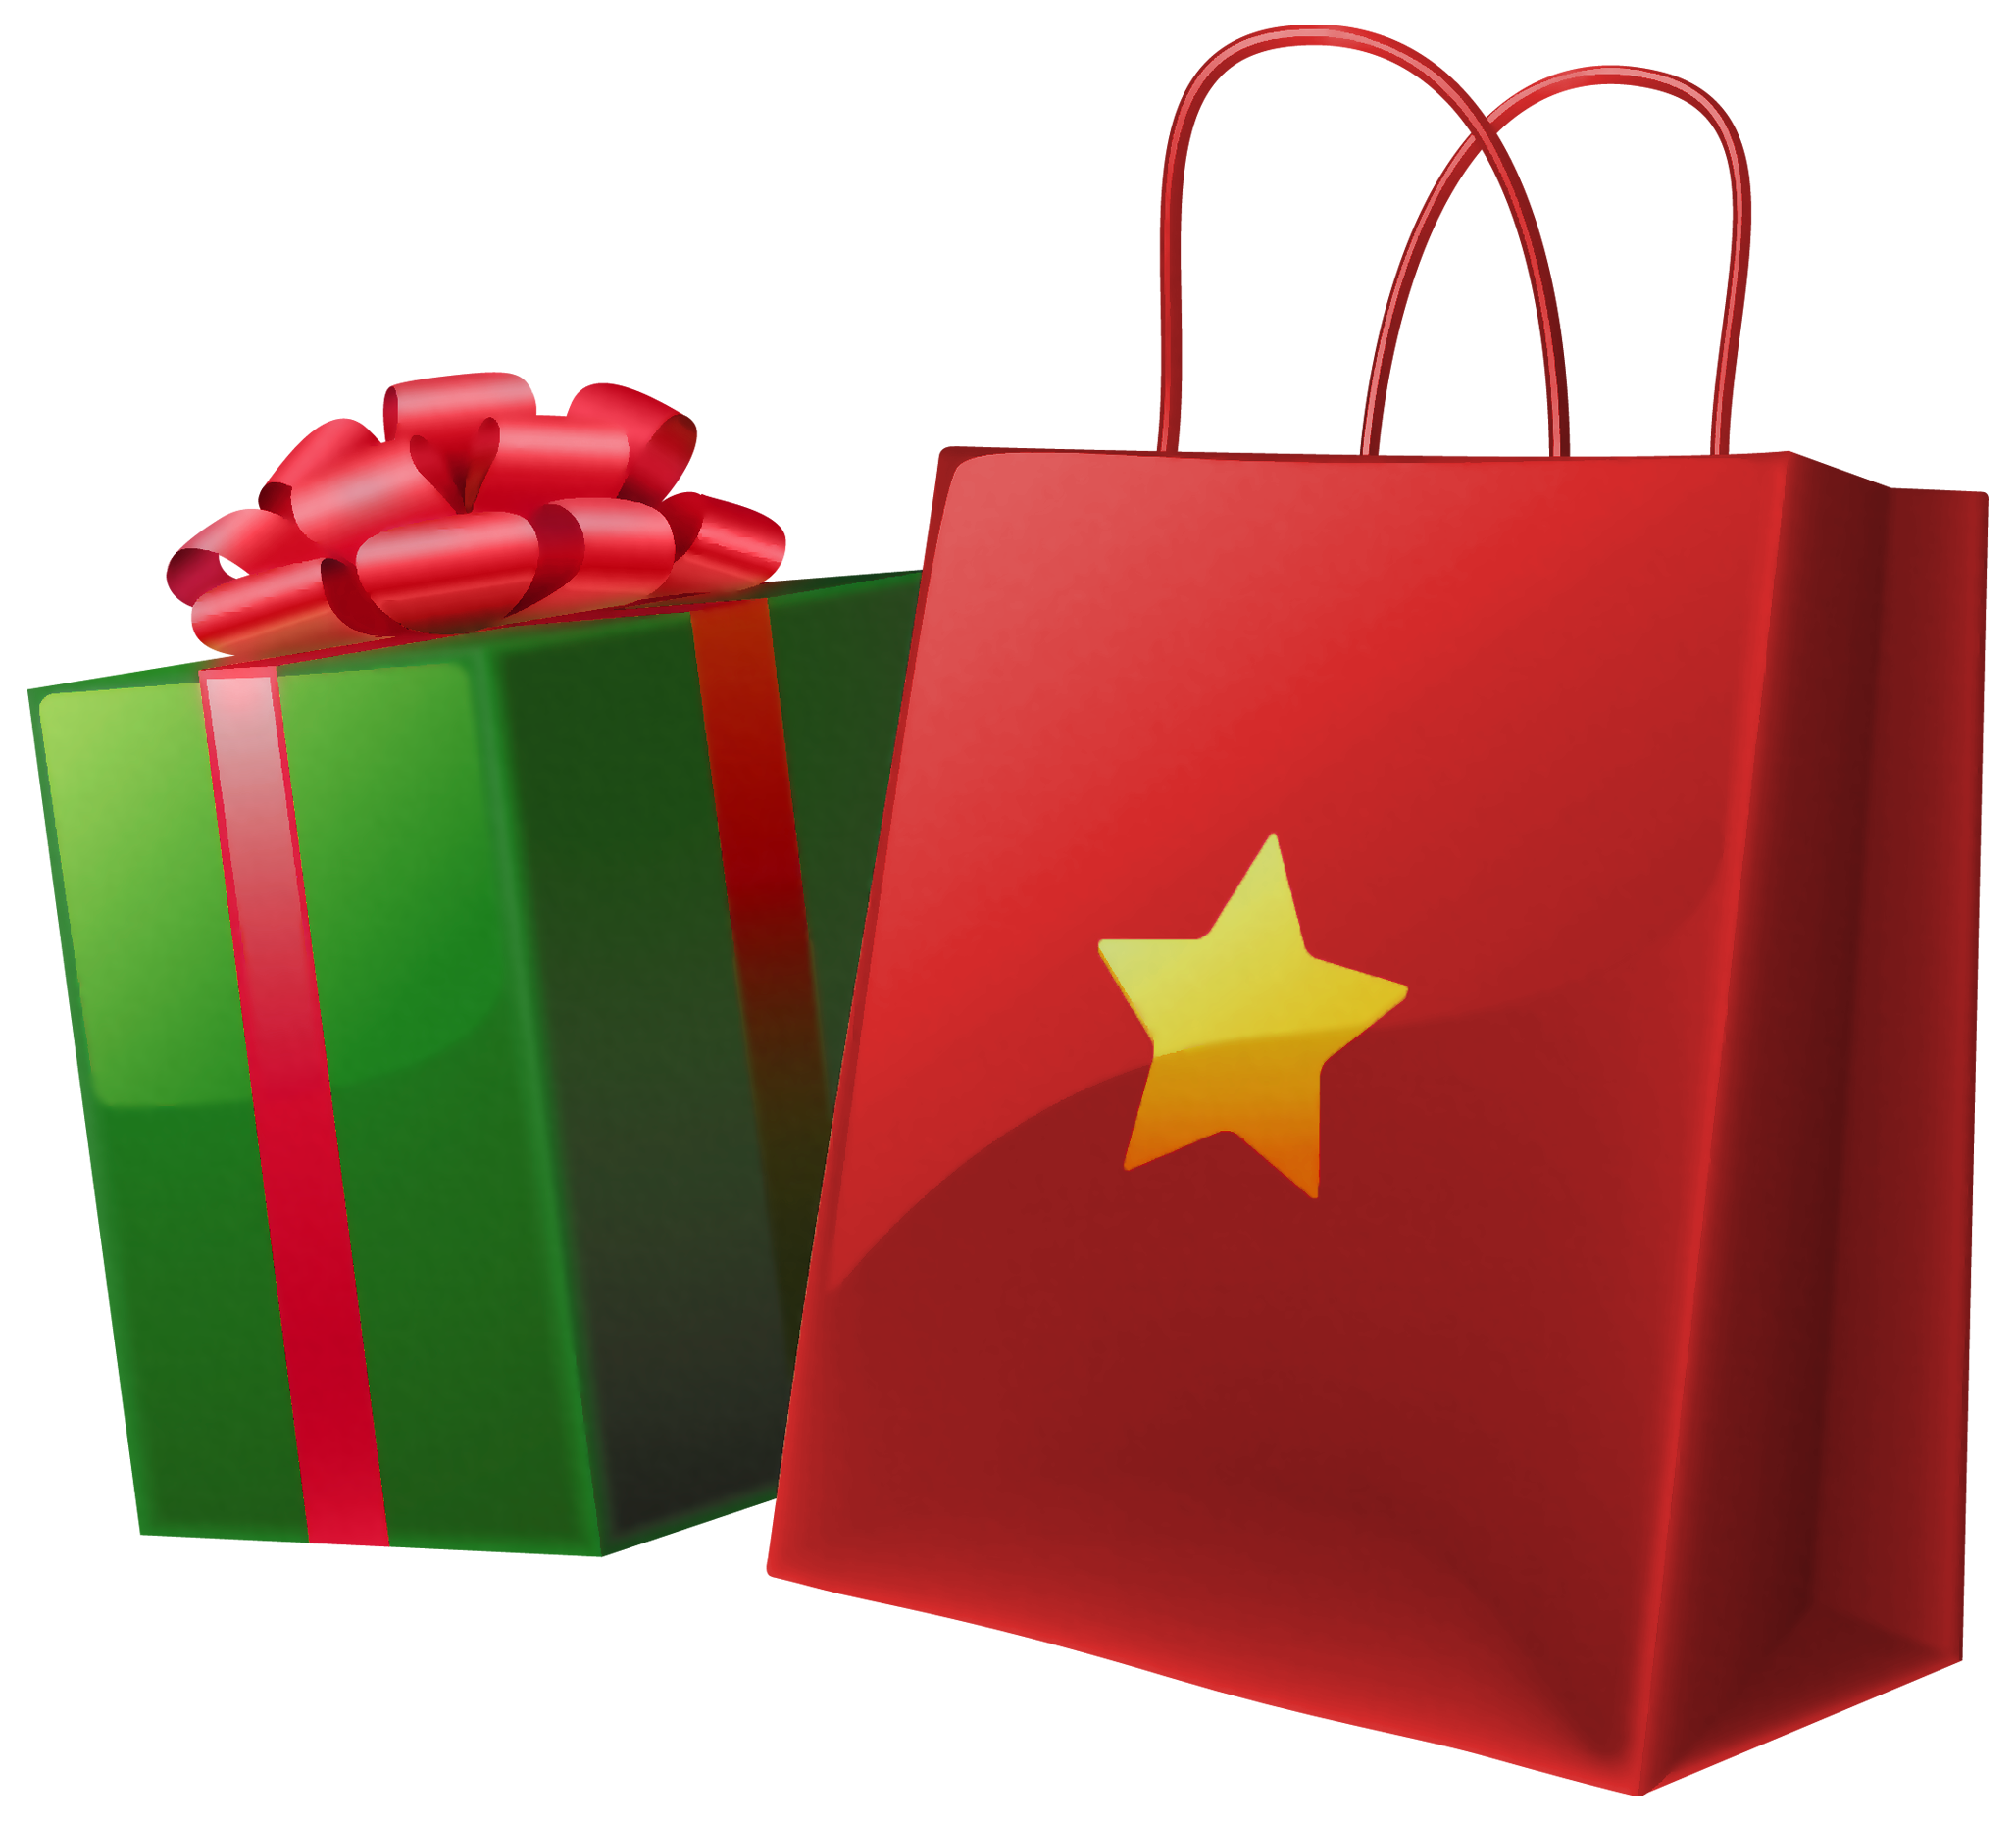 Transparent Christmas Gift Box and Bag